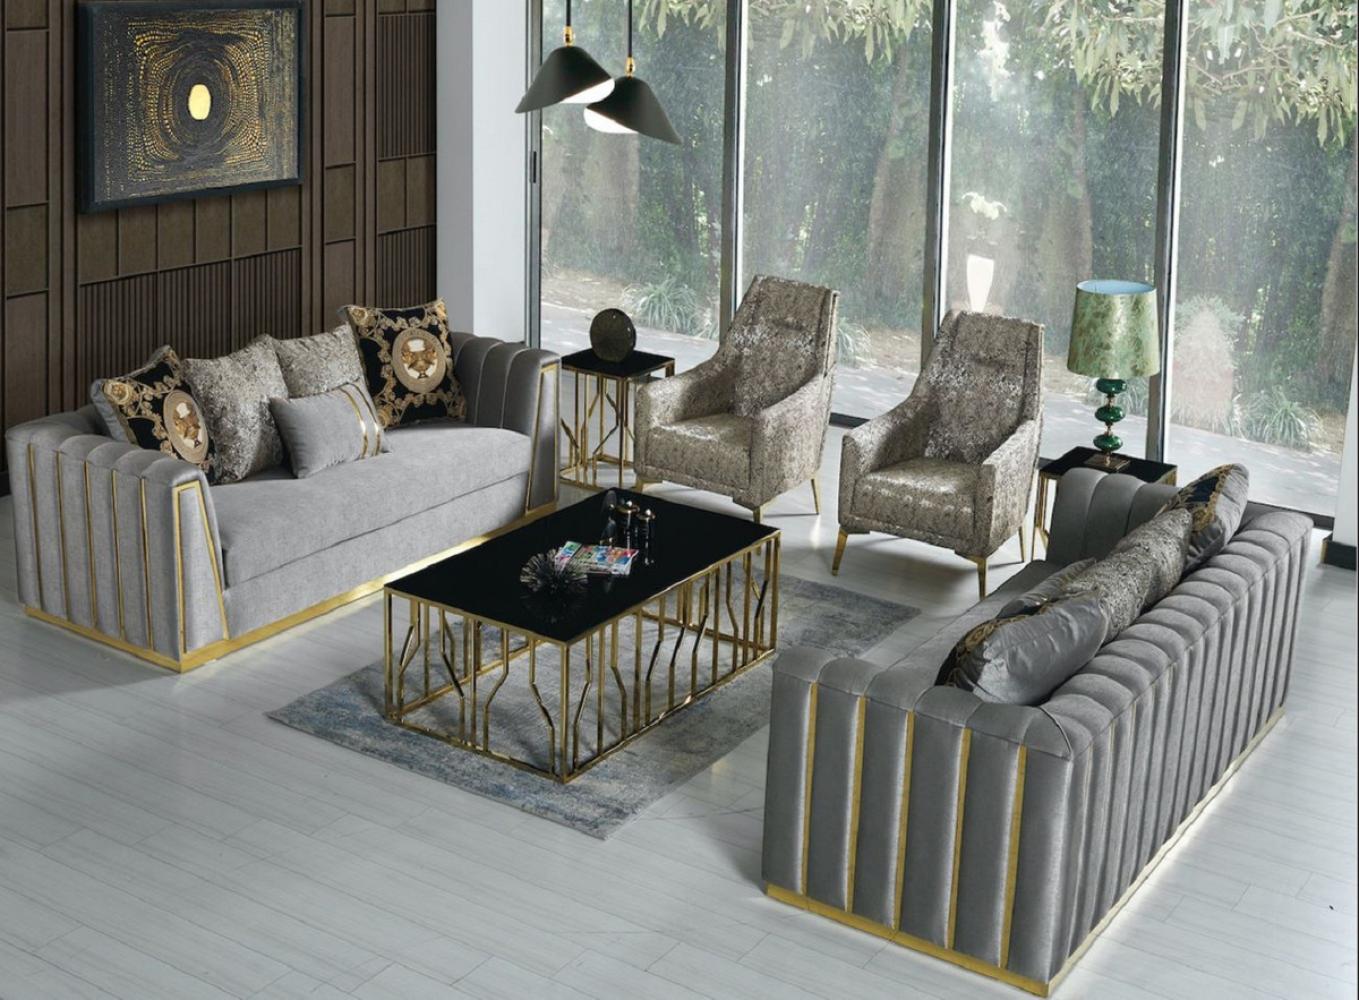 Casa Padrino Luxus Wohnzimmer Set Grau / Gold - 2 Sofas & 2 Sessel & 1 Couchtisch - Moderne Wohnzimmer Möbel - Luxus Qualität Bild 1